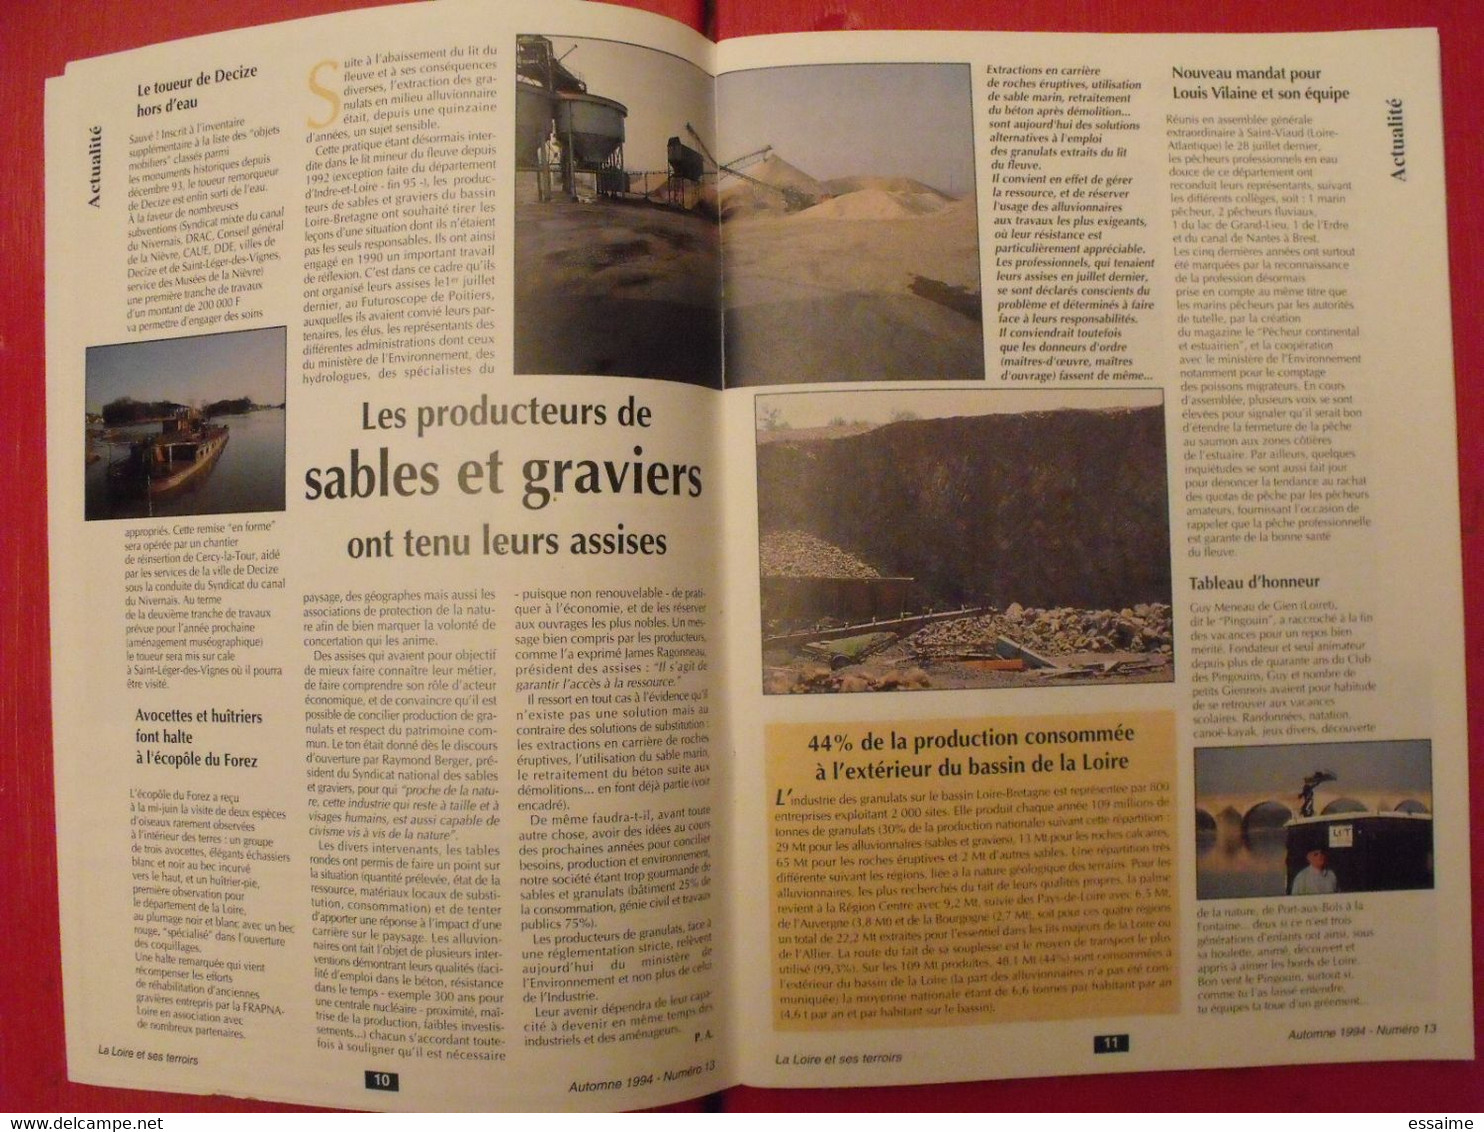 3 revues La Loire et ses terroirs. 1994-1995. n° 13,14,16. pilote de Loire Canuts Cosne abeilles retz civelles